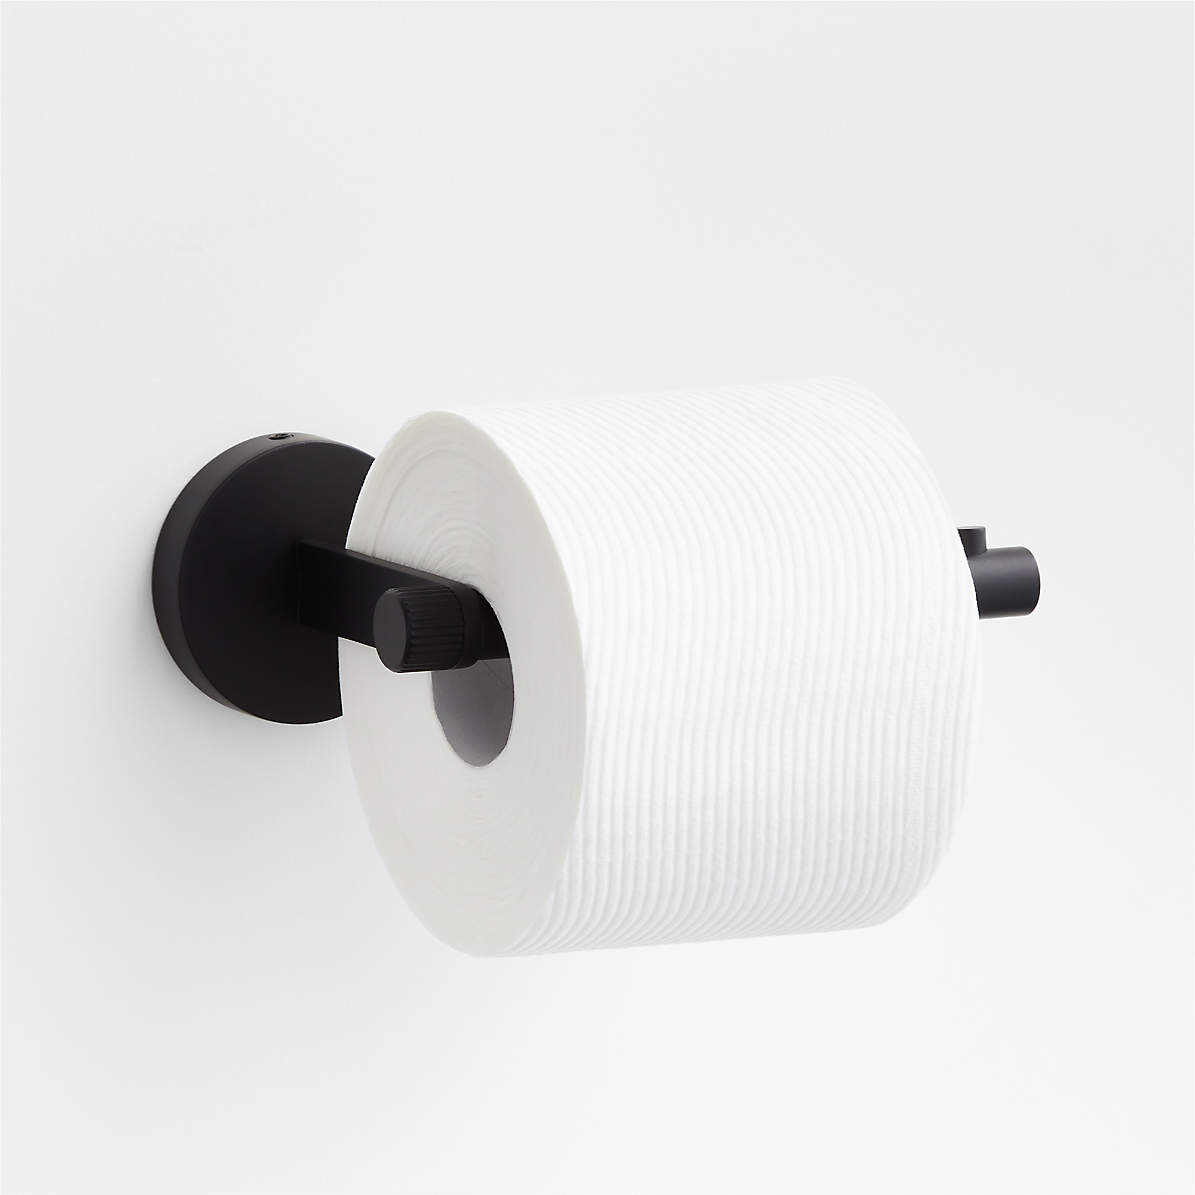 https://cb.scene7.com/is/image/Crate/ModFlutedBlkToiletPprHldAVSSS23/$web_pdp_main_carousel_zoom_med$/230220165545/modern-fluted-black-wall-mounted-toilet-paper-holder.jpg